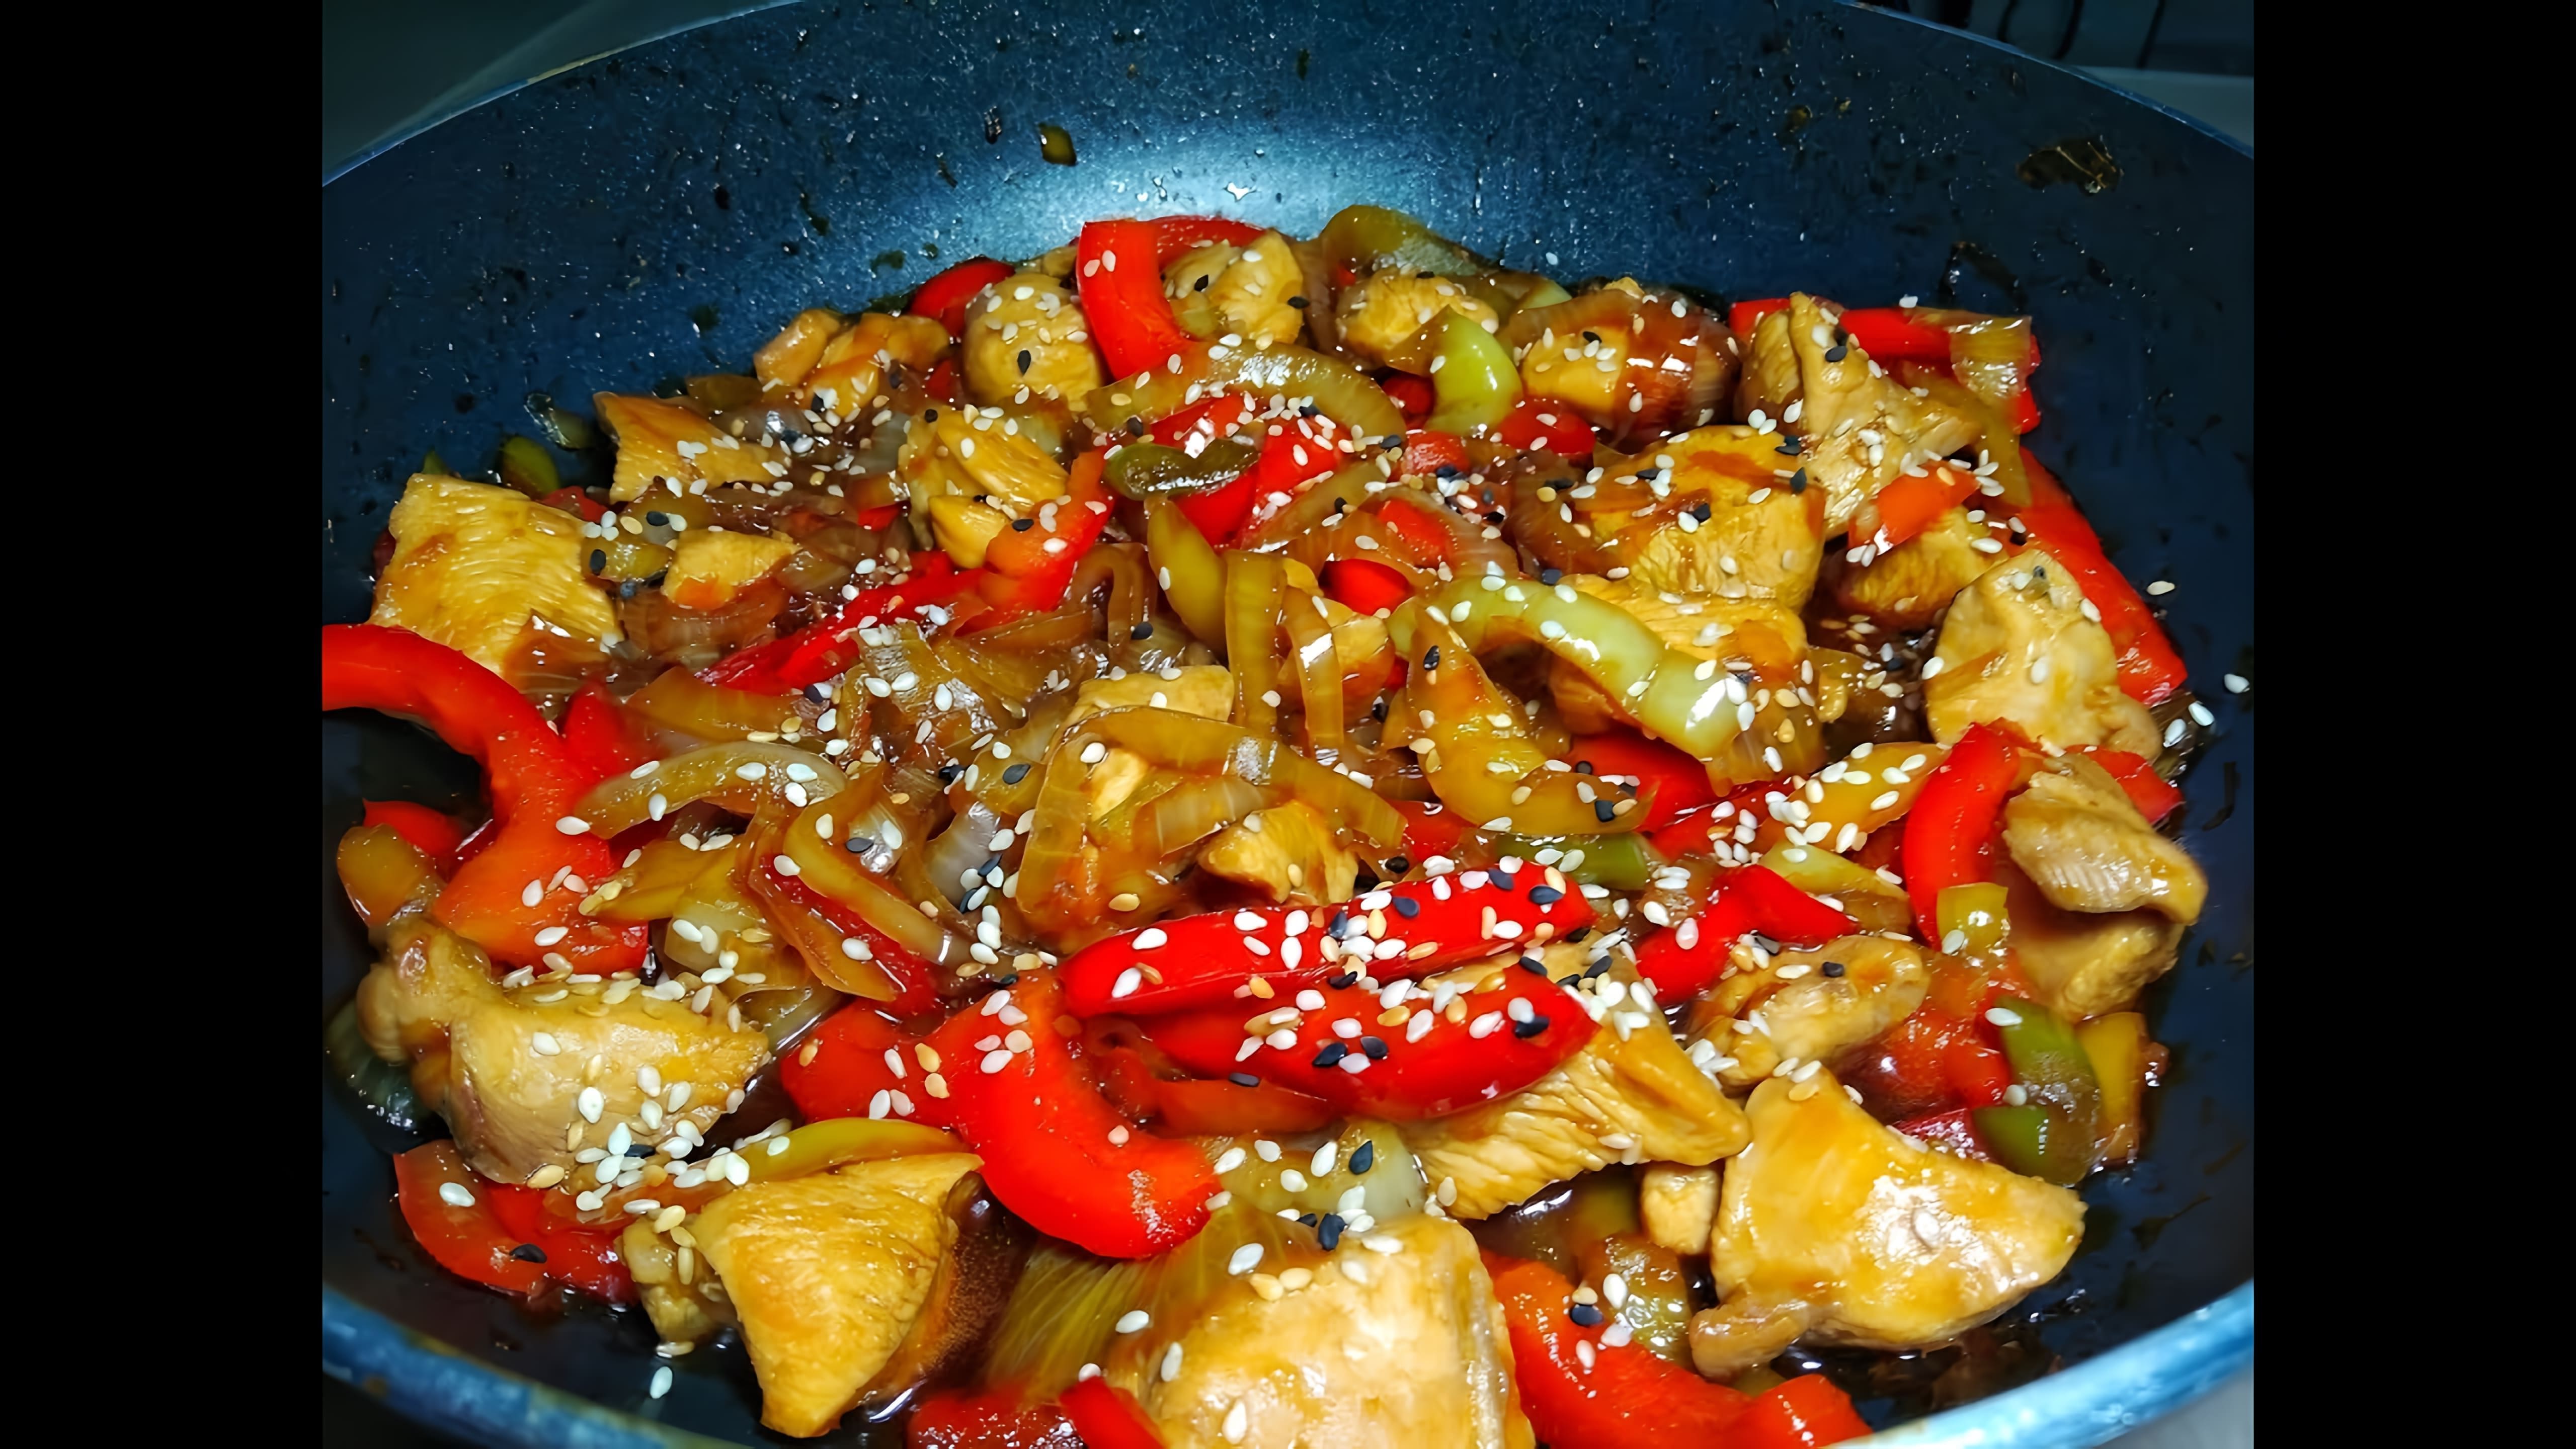 Индейка в соусе терияки - это простое и вкусное блюдо, которое можно приготовить в домашних условиях